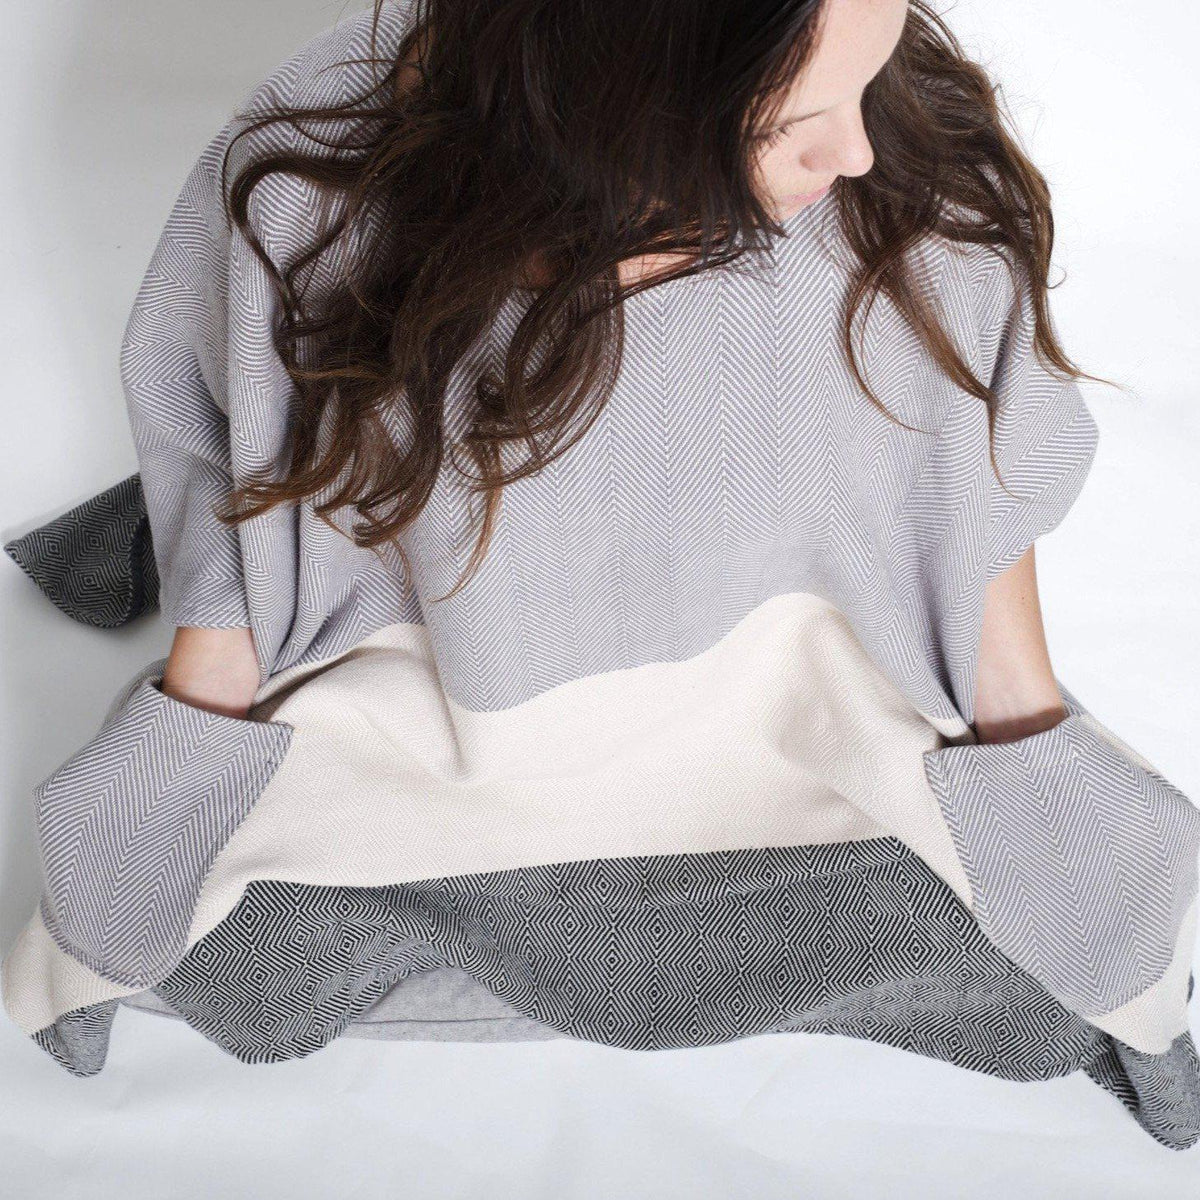 SALE* Meditation Blanket / Shawl - Grey Cream Charcoal Stripe